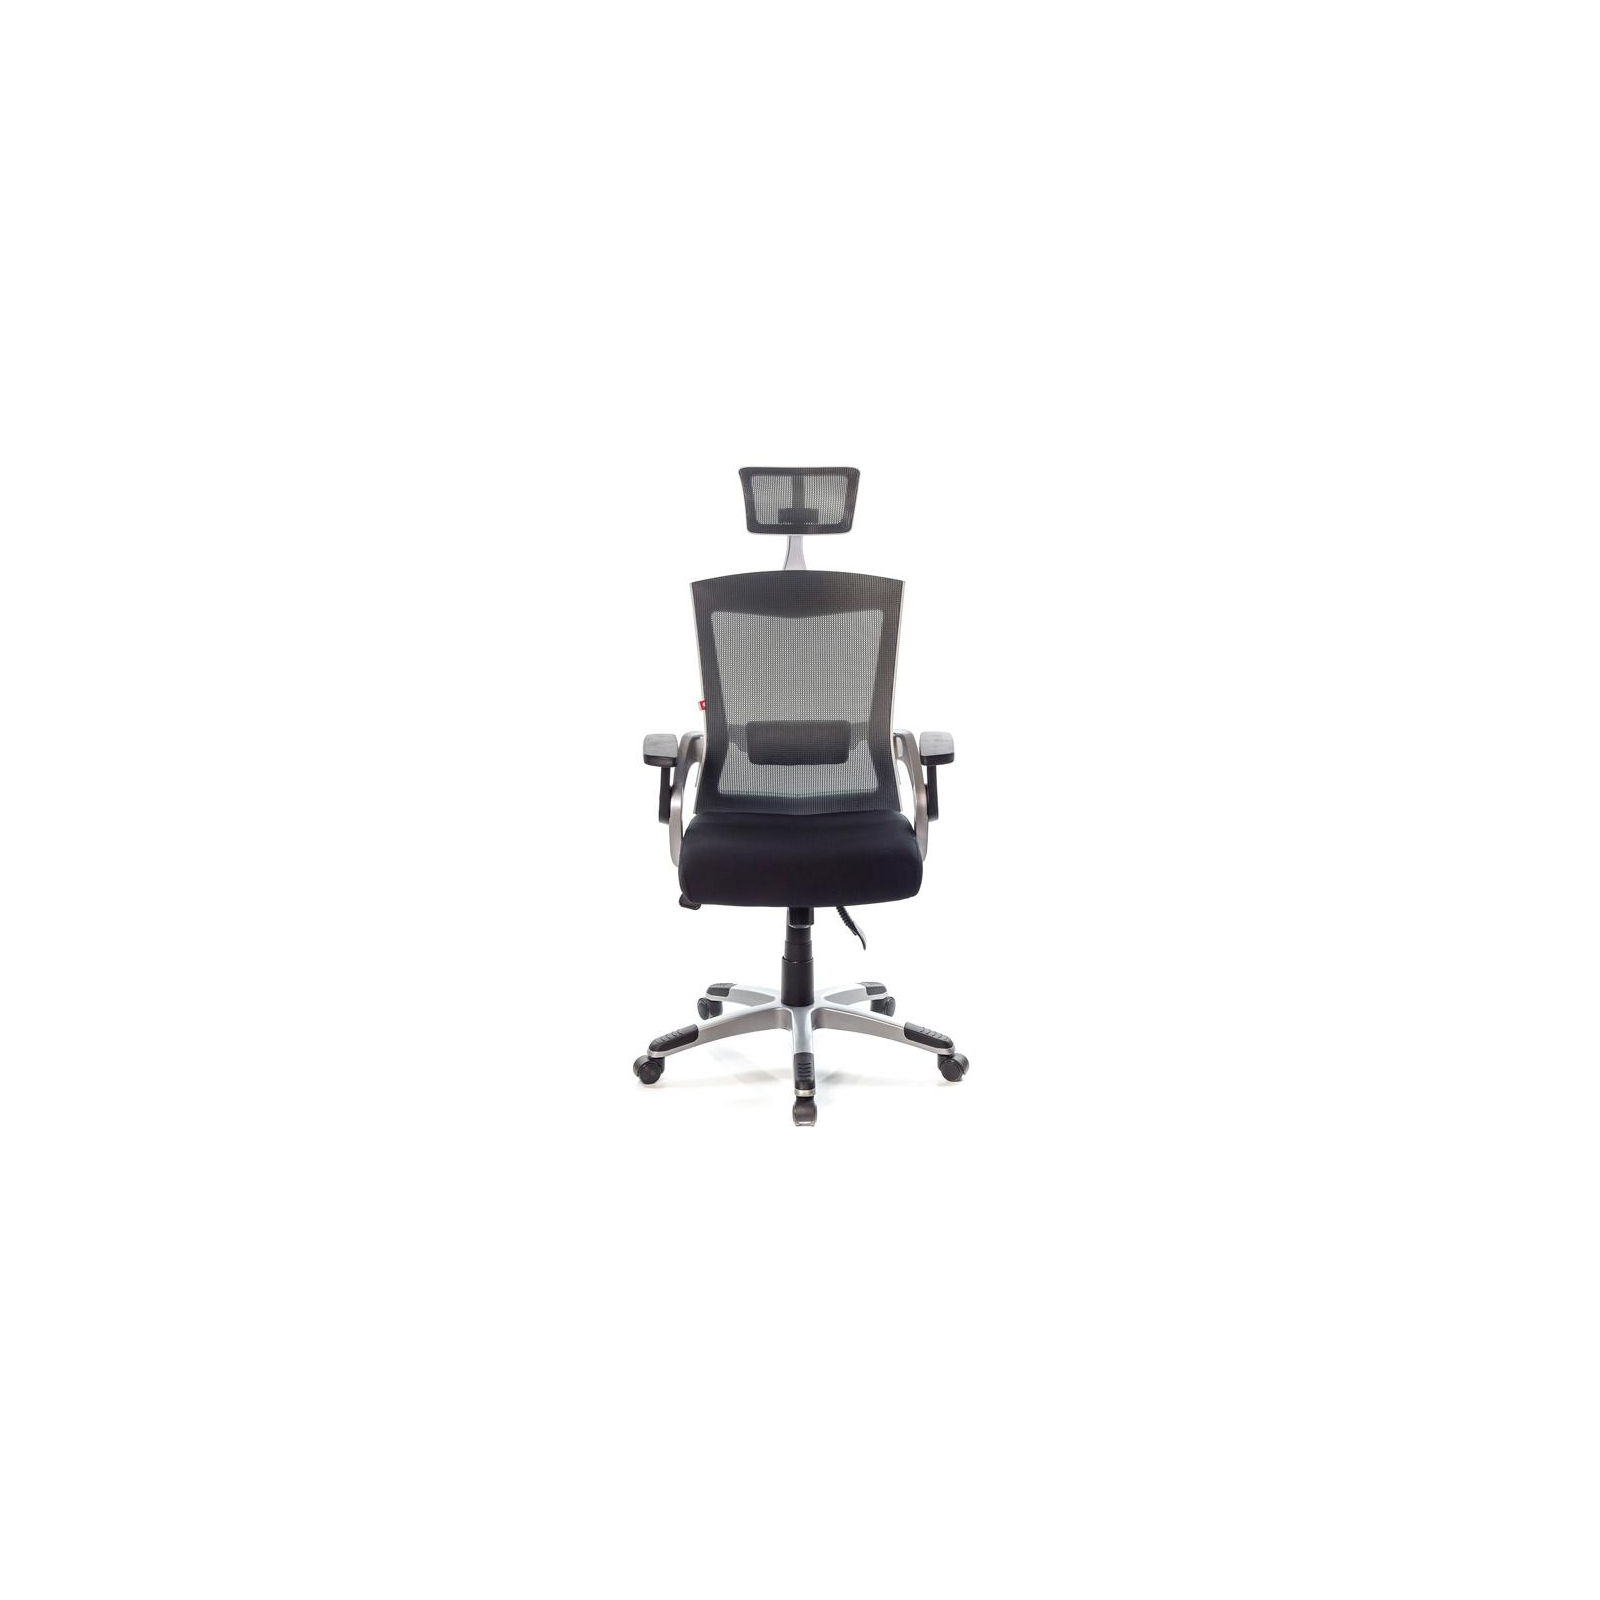 Офисное кресло Аклас Прима PL HR ANF Бордовое (10480) изображение 2